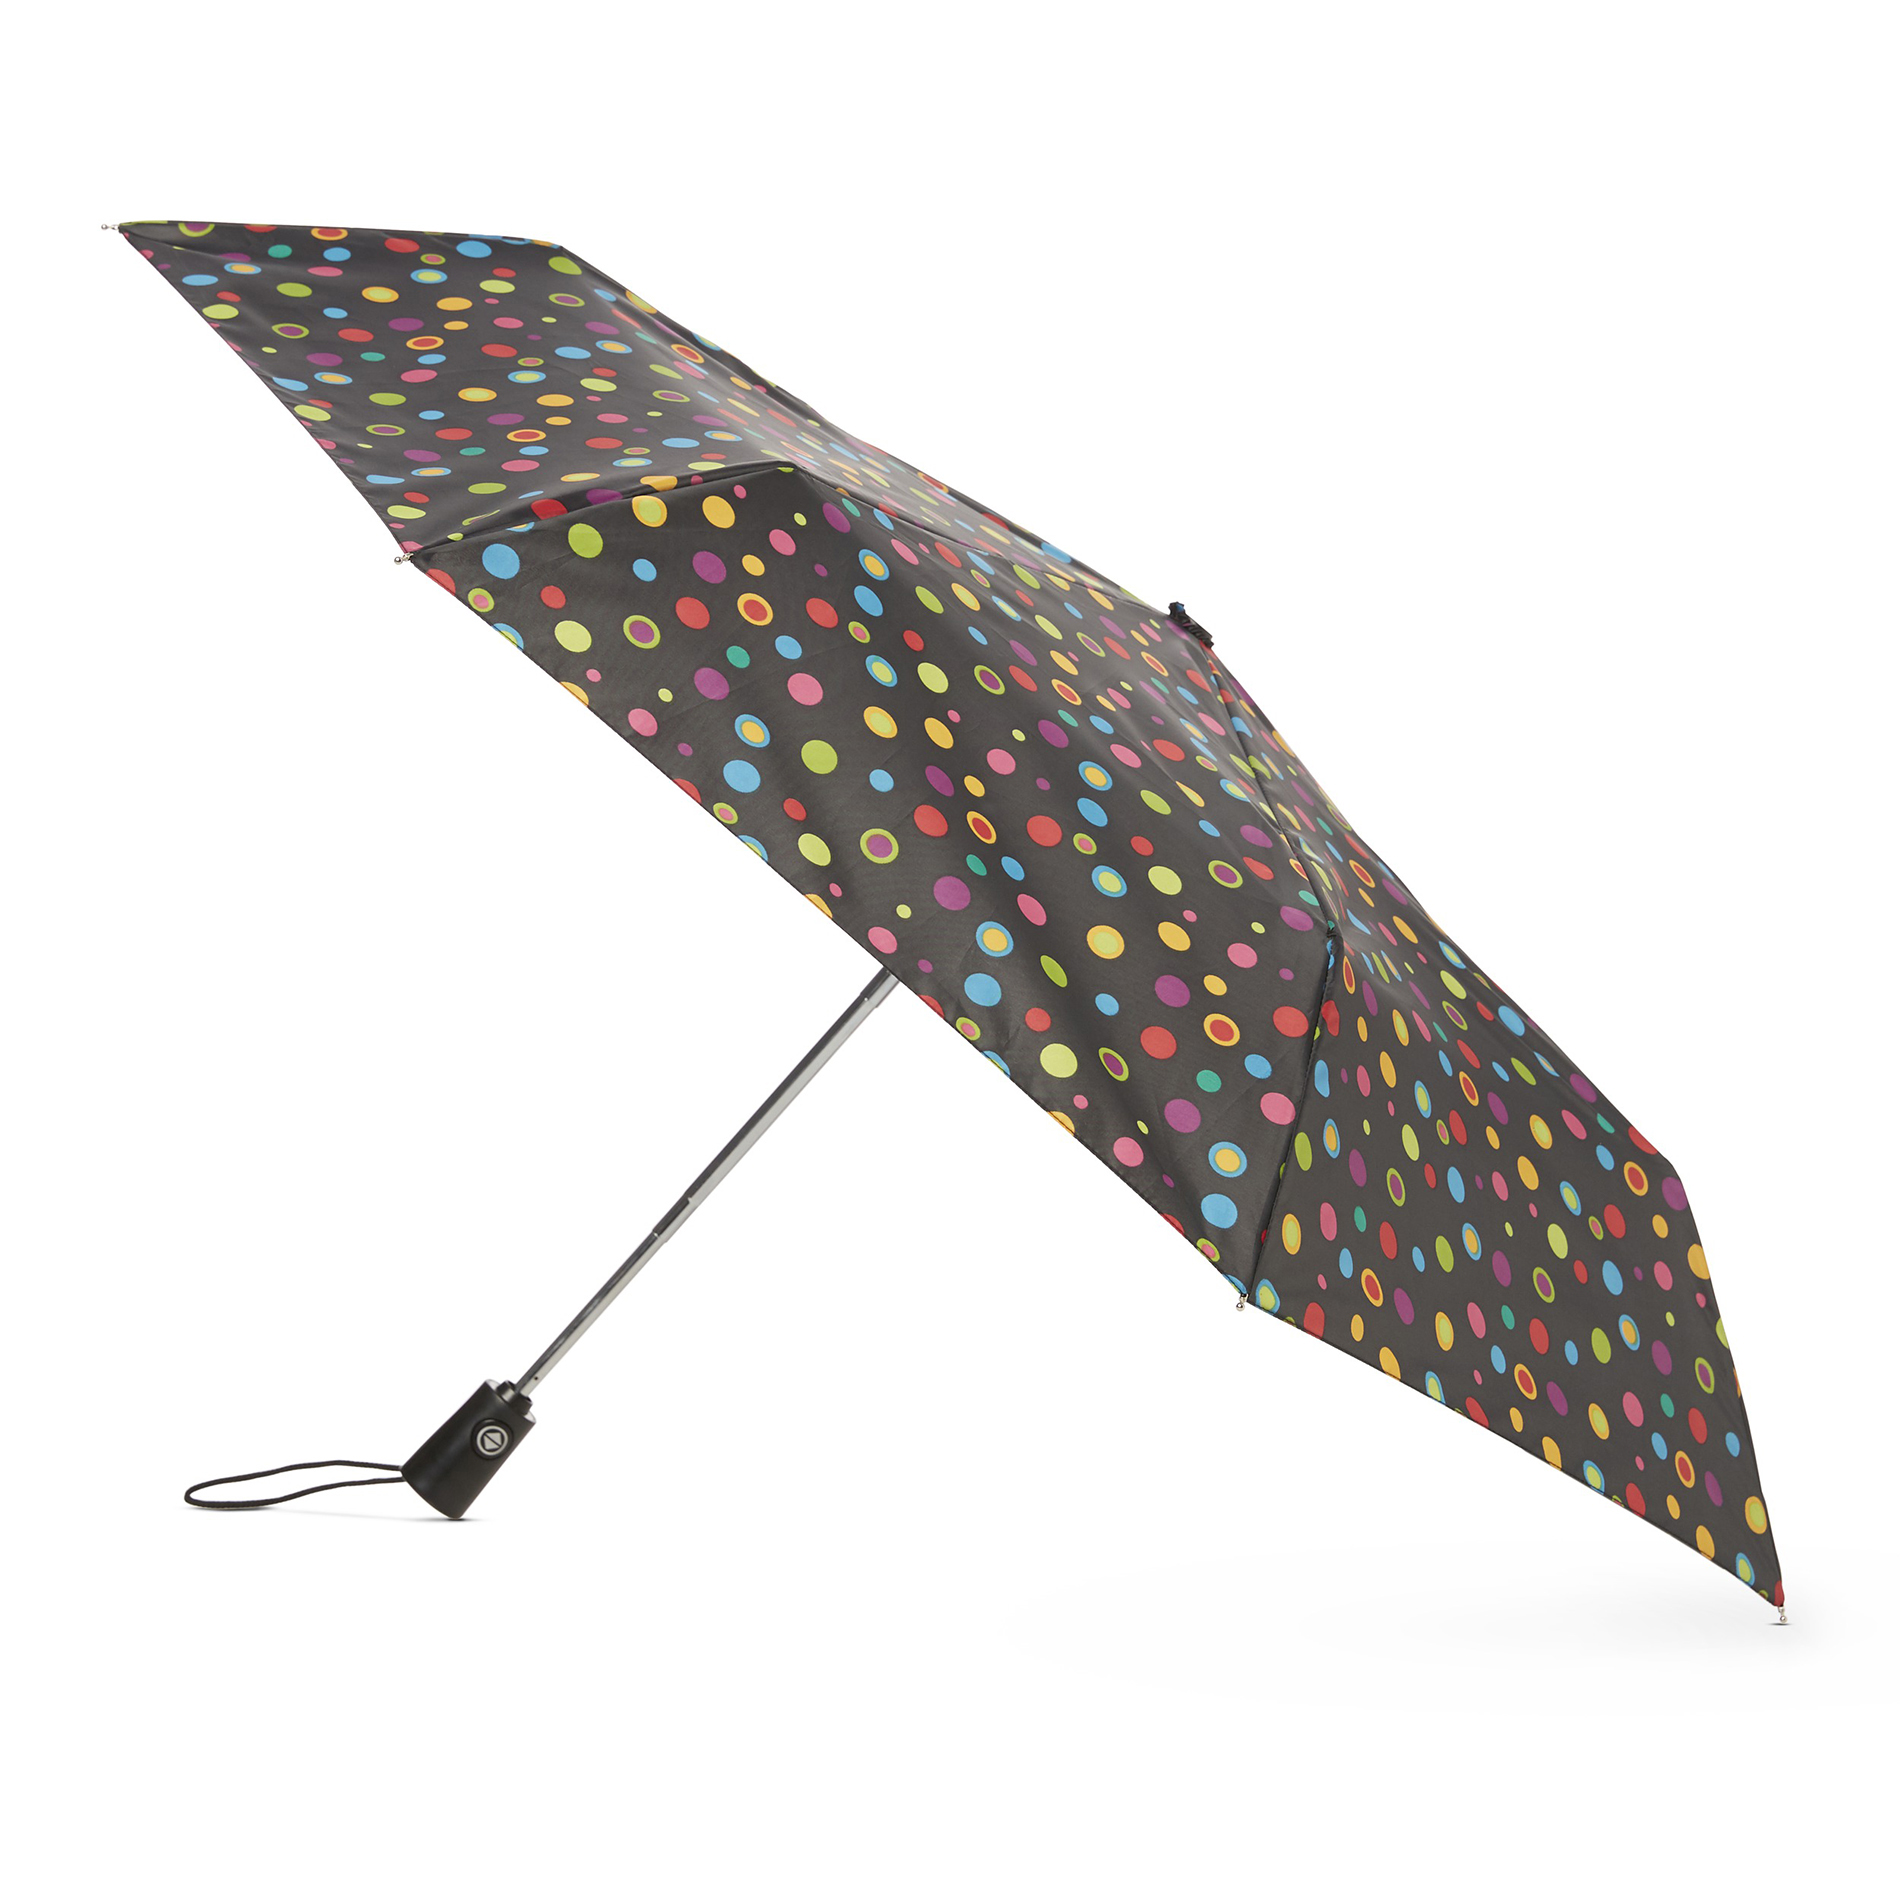 Totes Automatic Travel Umbrella & Cover - Dots